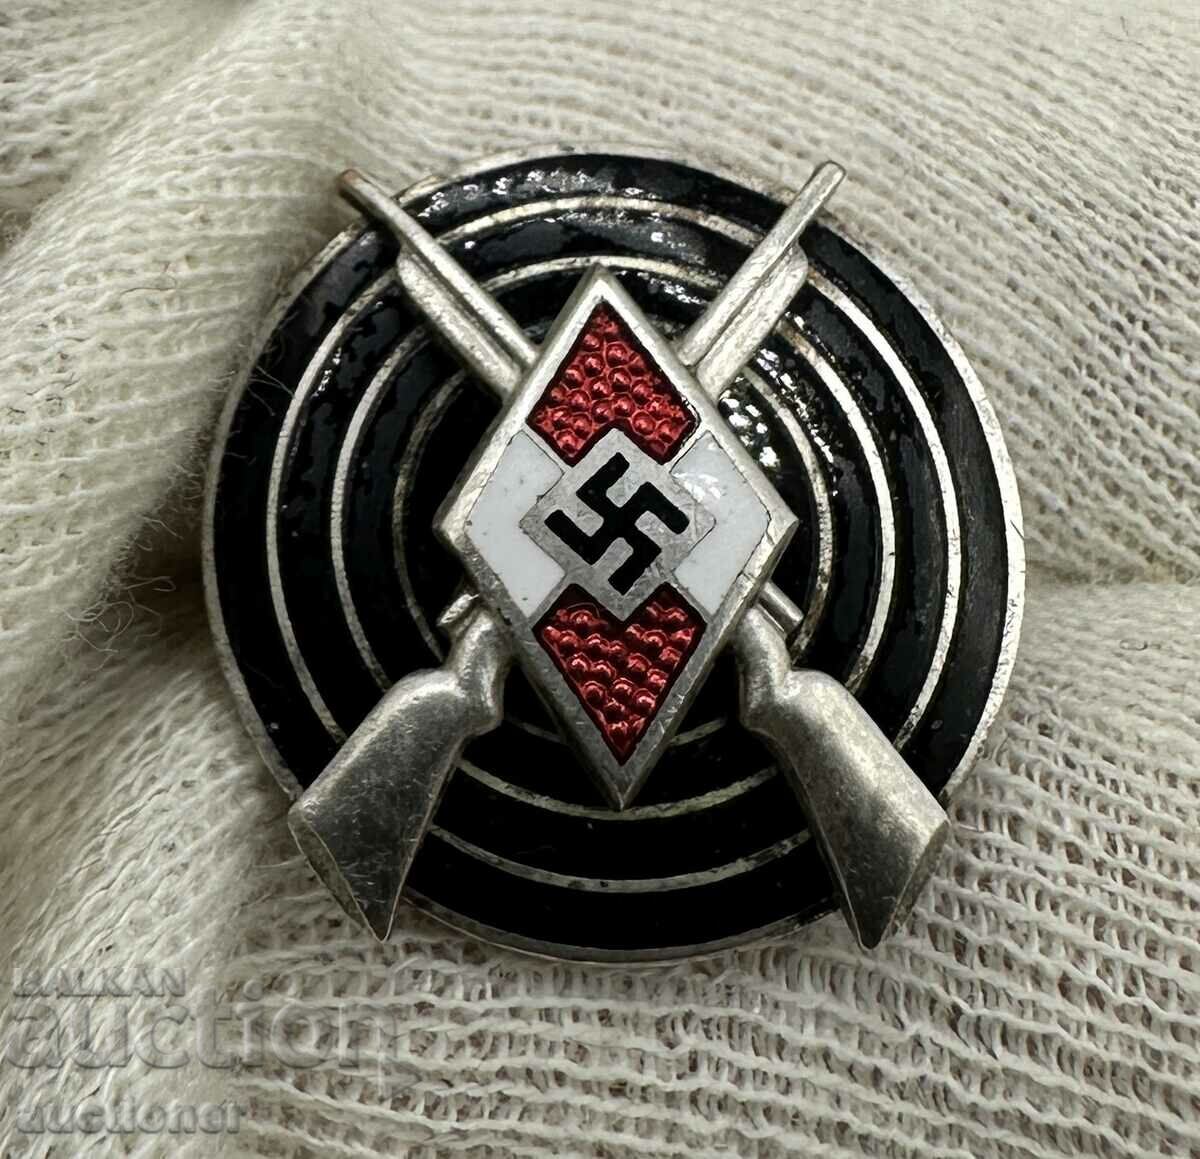 Σήμα σκοποβολής του Τρίτου Ράιχ Γερμανίας Hitlerjugend